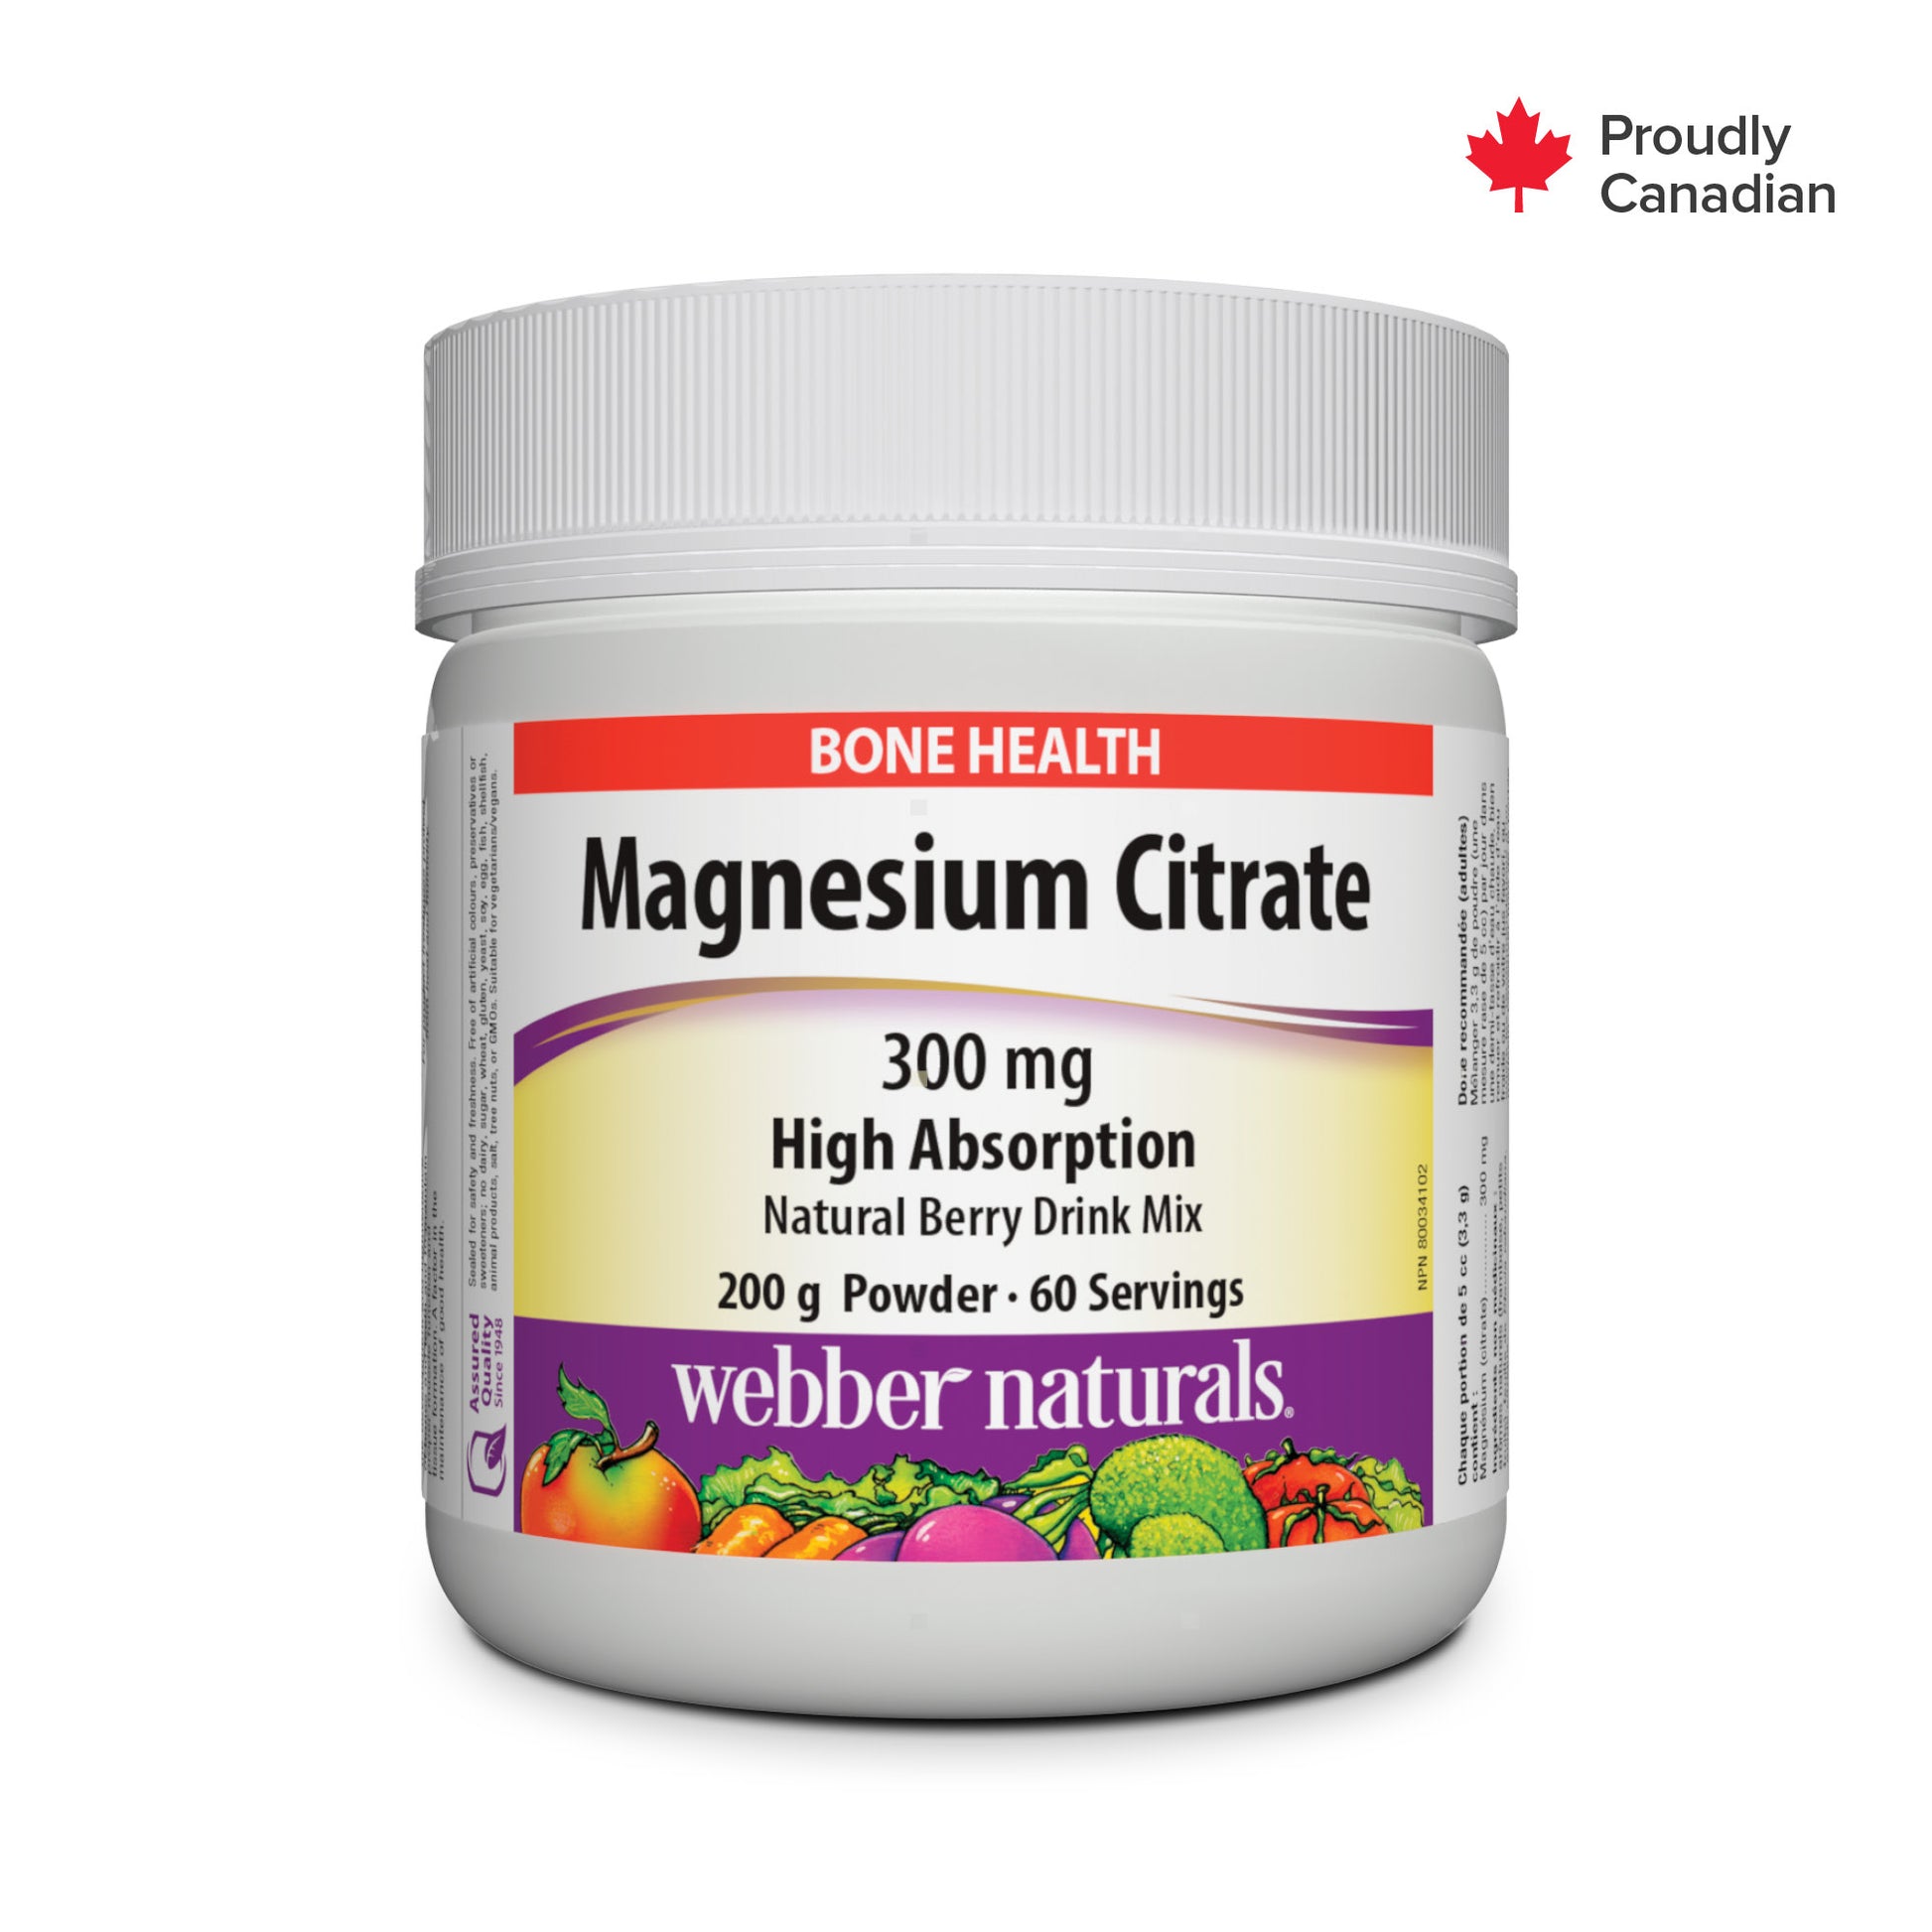 Citrate de magnésium Forte absorption 300 mg petits fruits for Webber Naturals|v|hi-res|WN3169